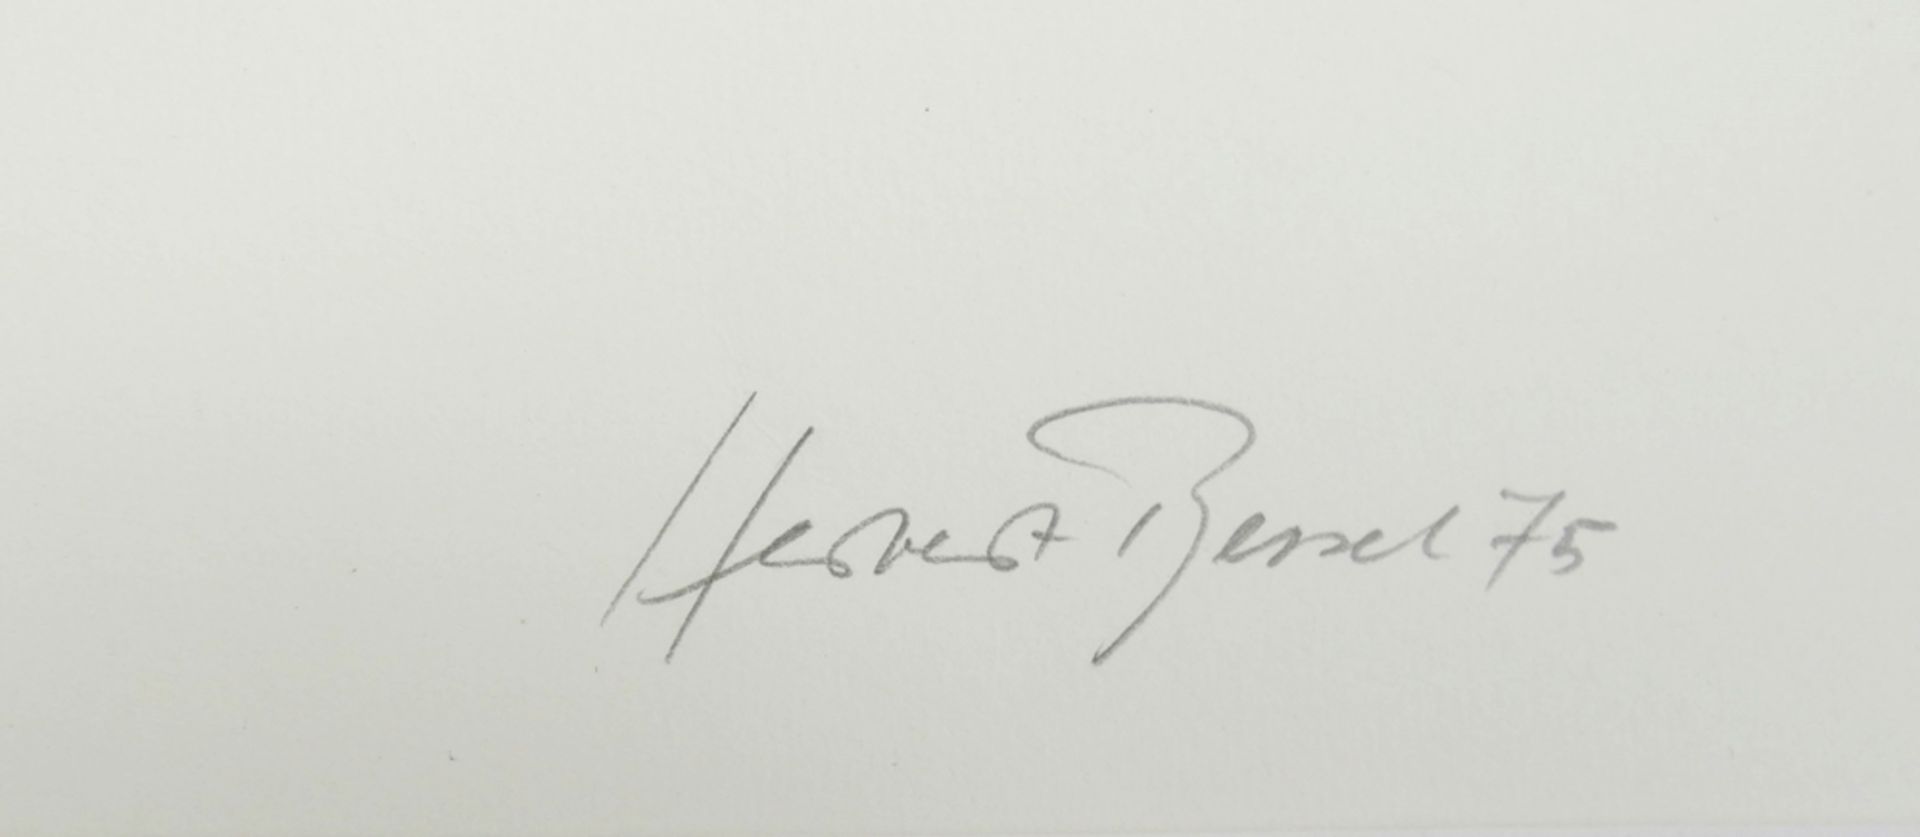 Herbert Bessel 1921 - 2013. "Abstrakte Komposition" signiert Herbert Bessel 75. Blatt 20/80. - Bild 2 aus 2